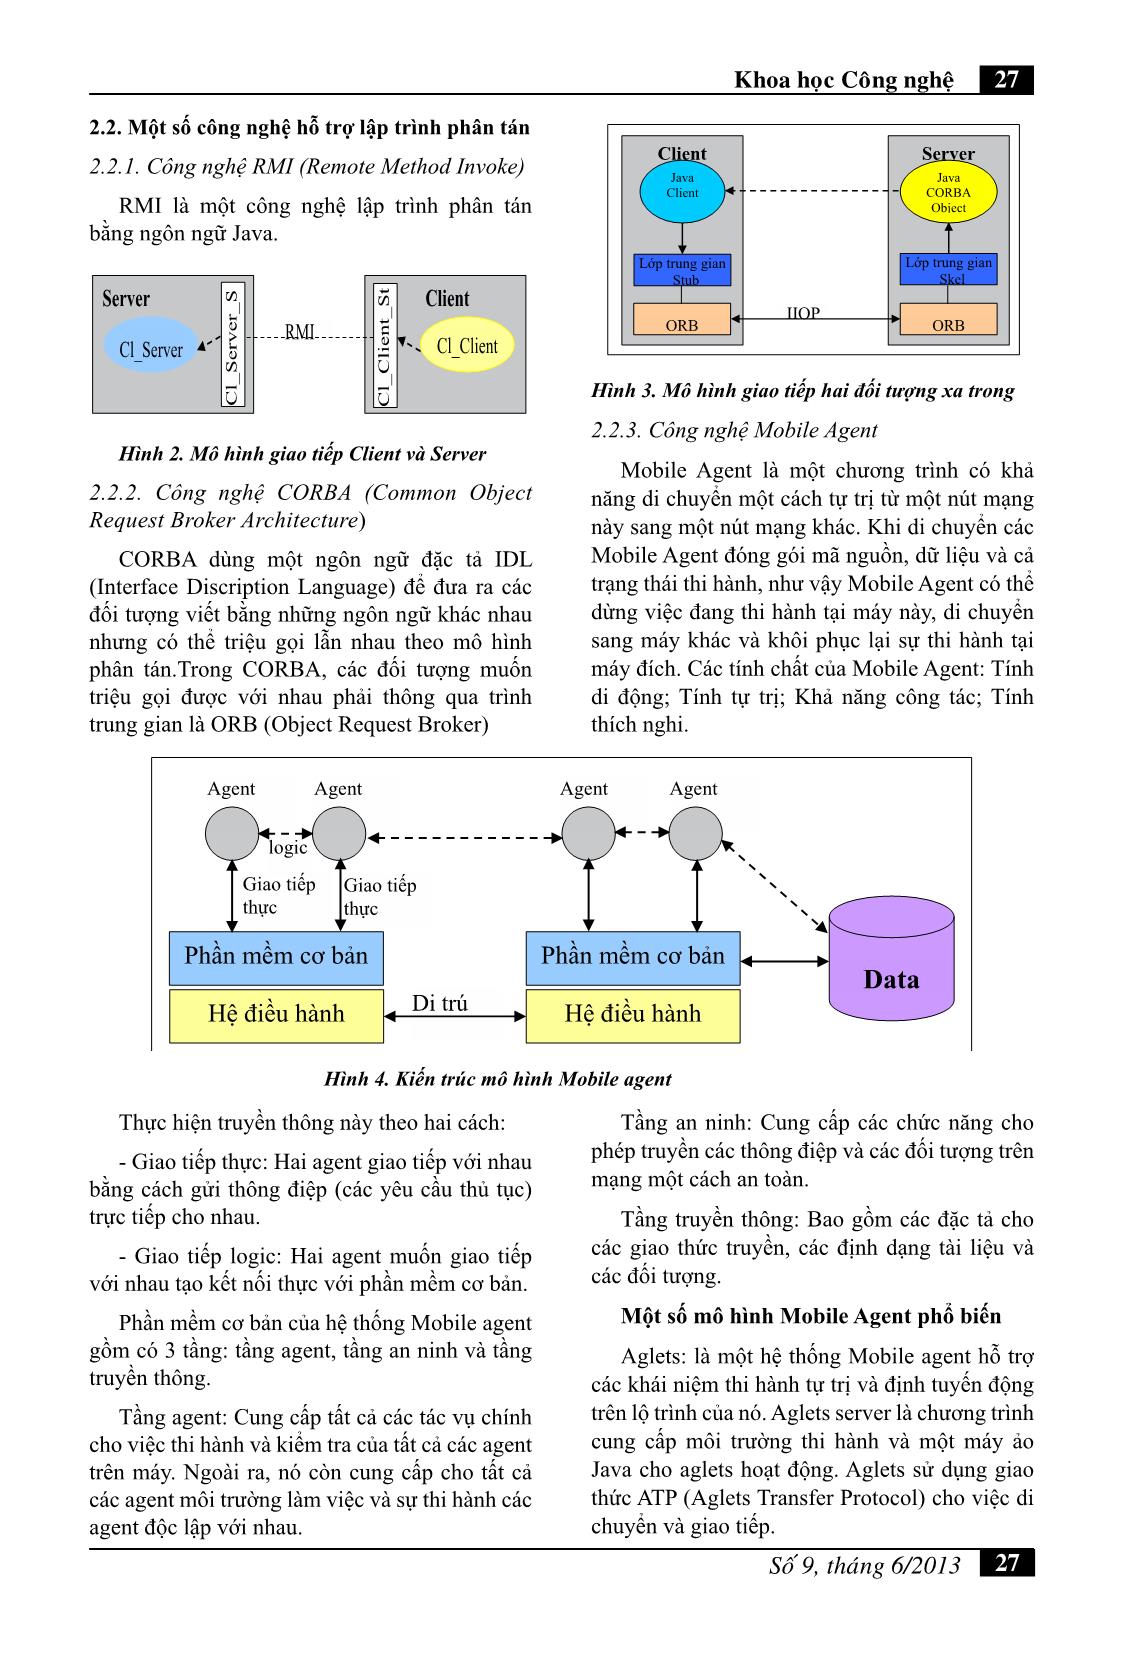 Lập trình phân tán dùng công nghệ Mobile Agent với sự hỗ trợ của Java và Voyager trang 2